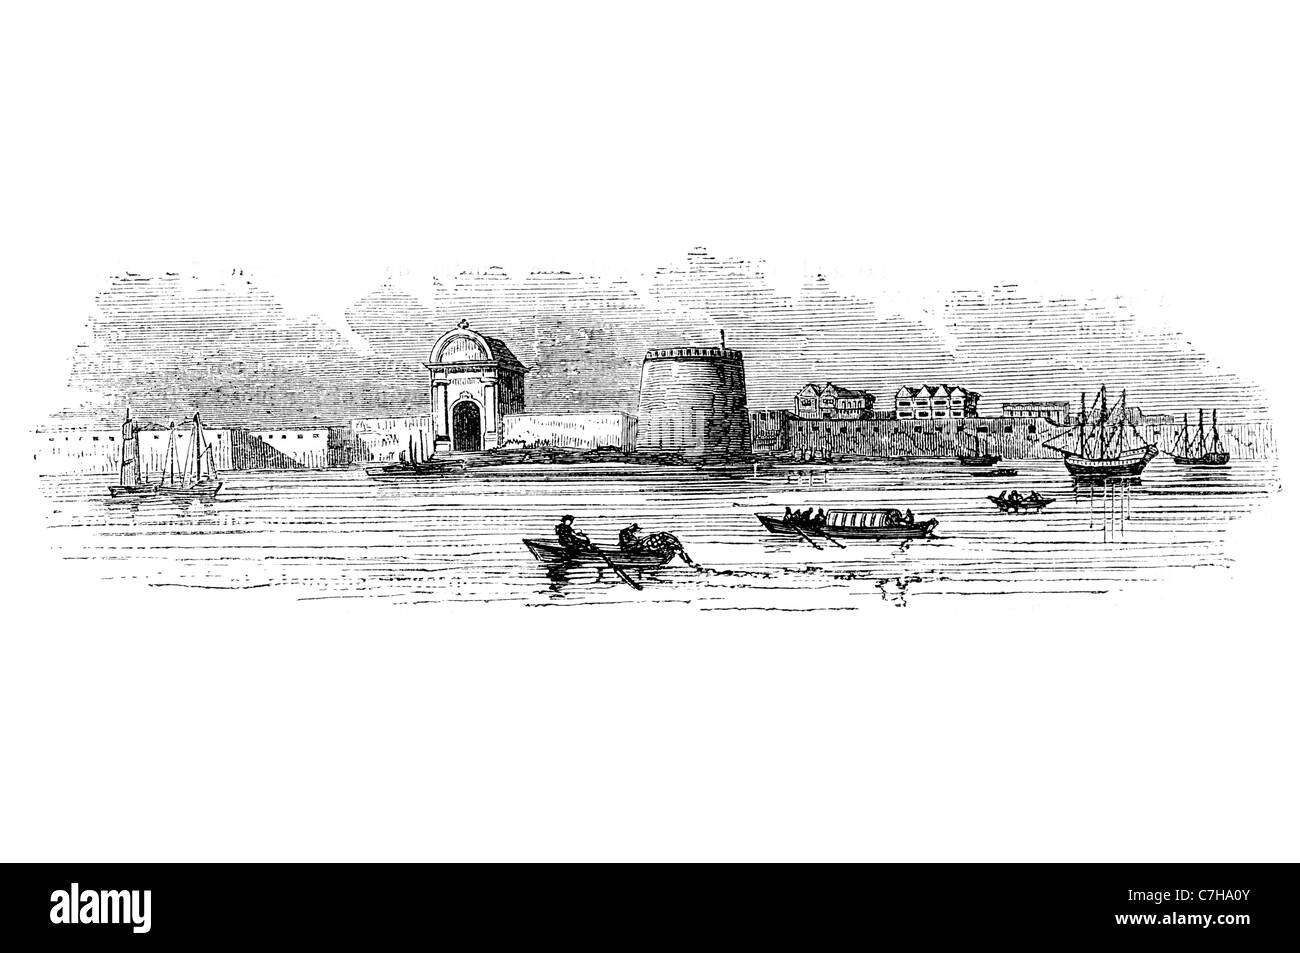 Château fort bastion militaire armée rempart canon tourelle de défense des armes à feu la protection royale naval de Londres porte d'eau Banque D'Images